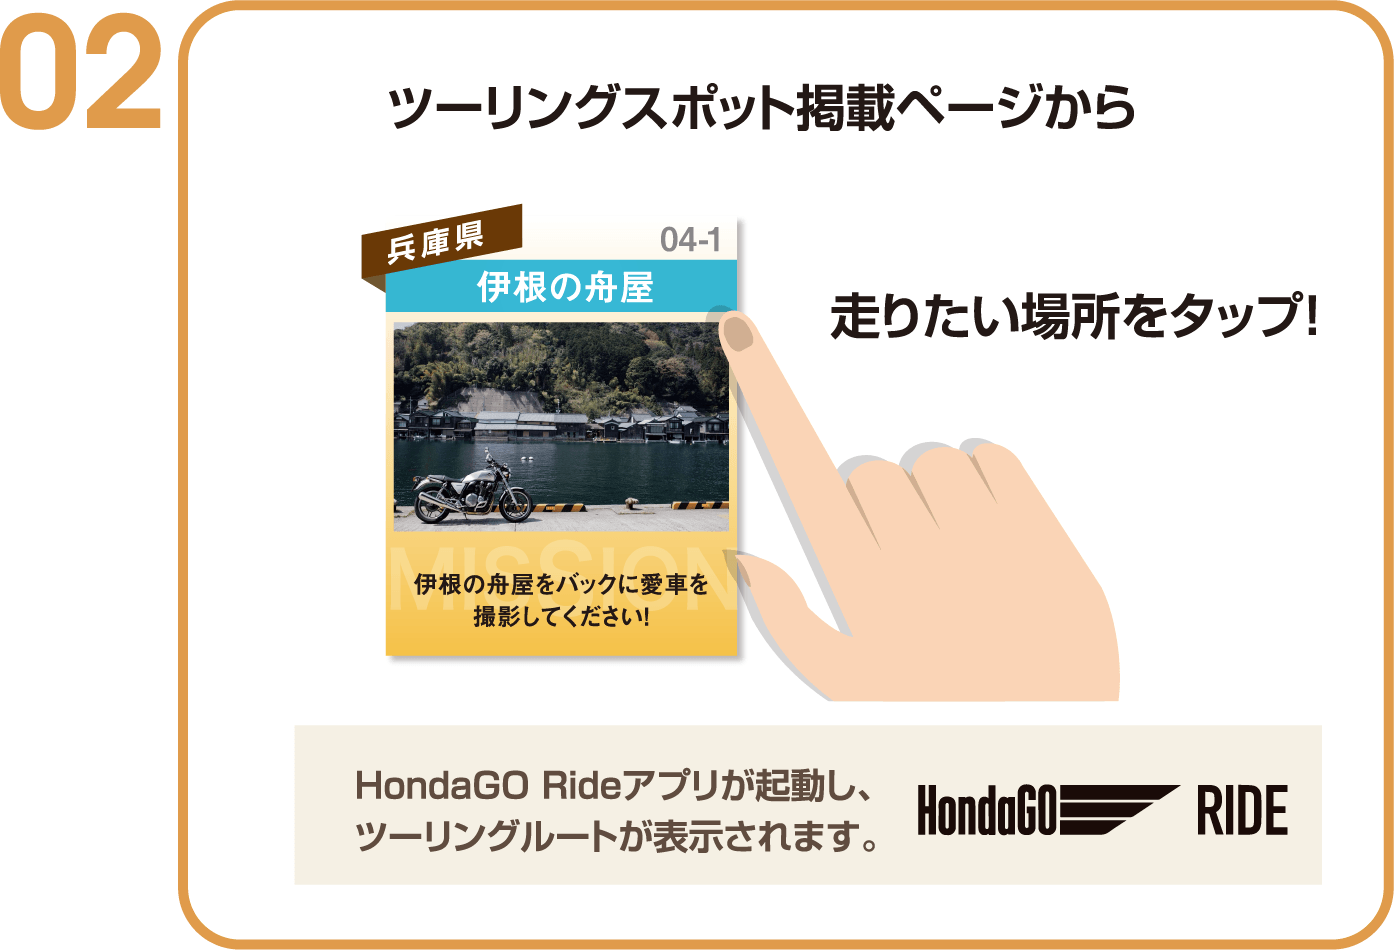 ミッション掲載ページから走りたい、撮りたい
ミッションをタップ！HondaGO Rideアプリが起動し、
ツーリングルートが表示されます。